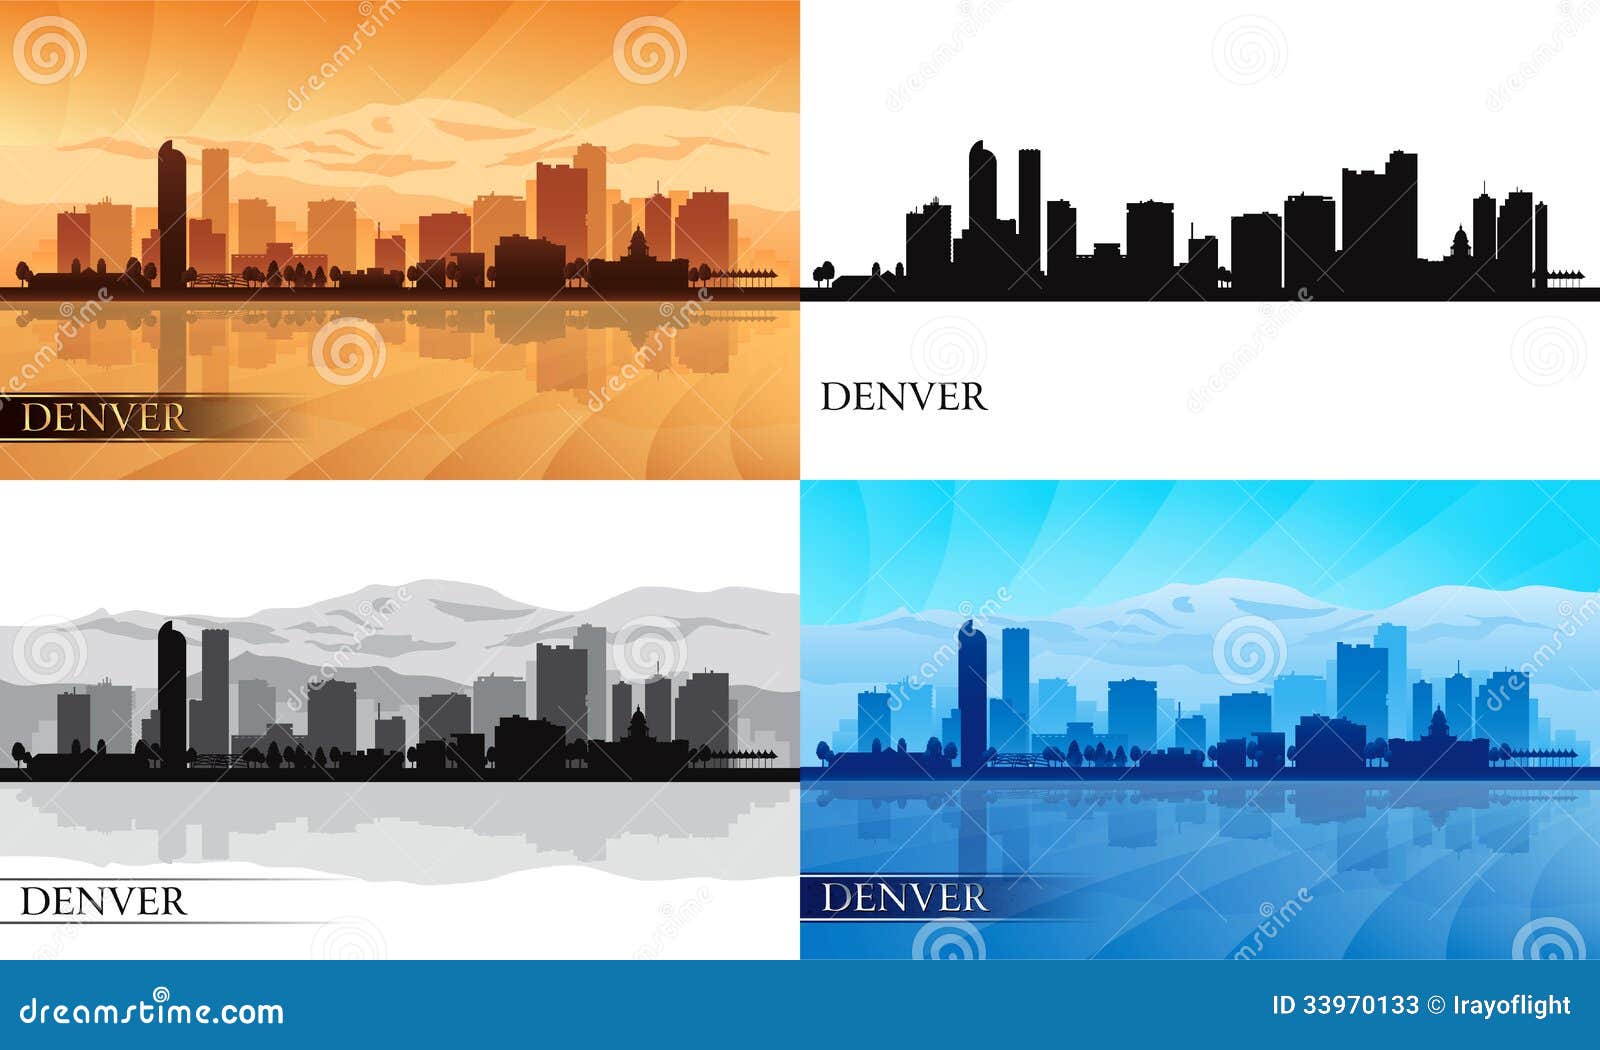 denver city skyline silhouettes set